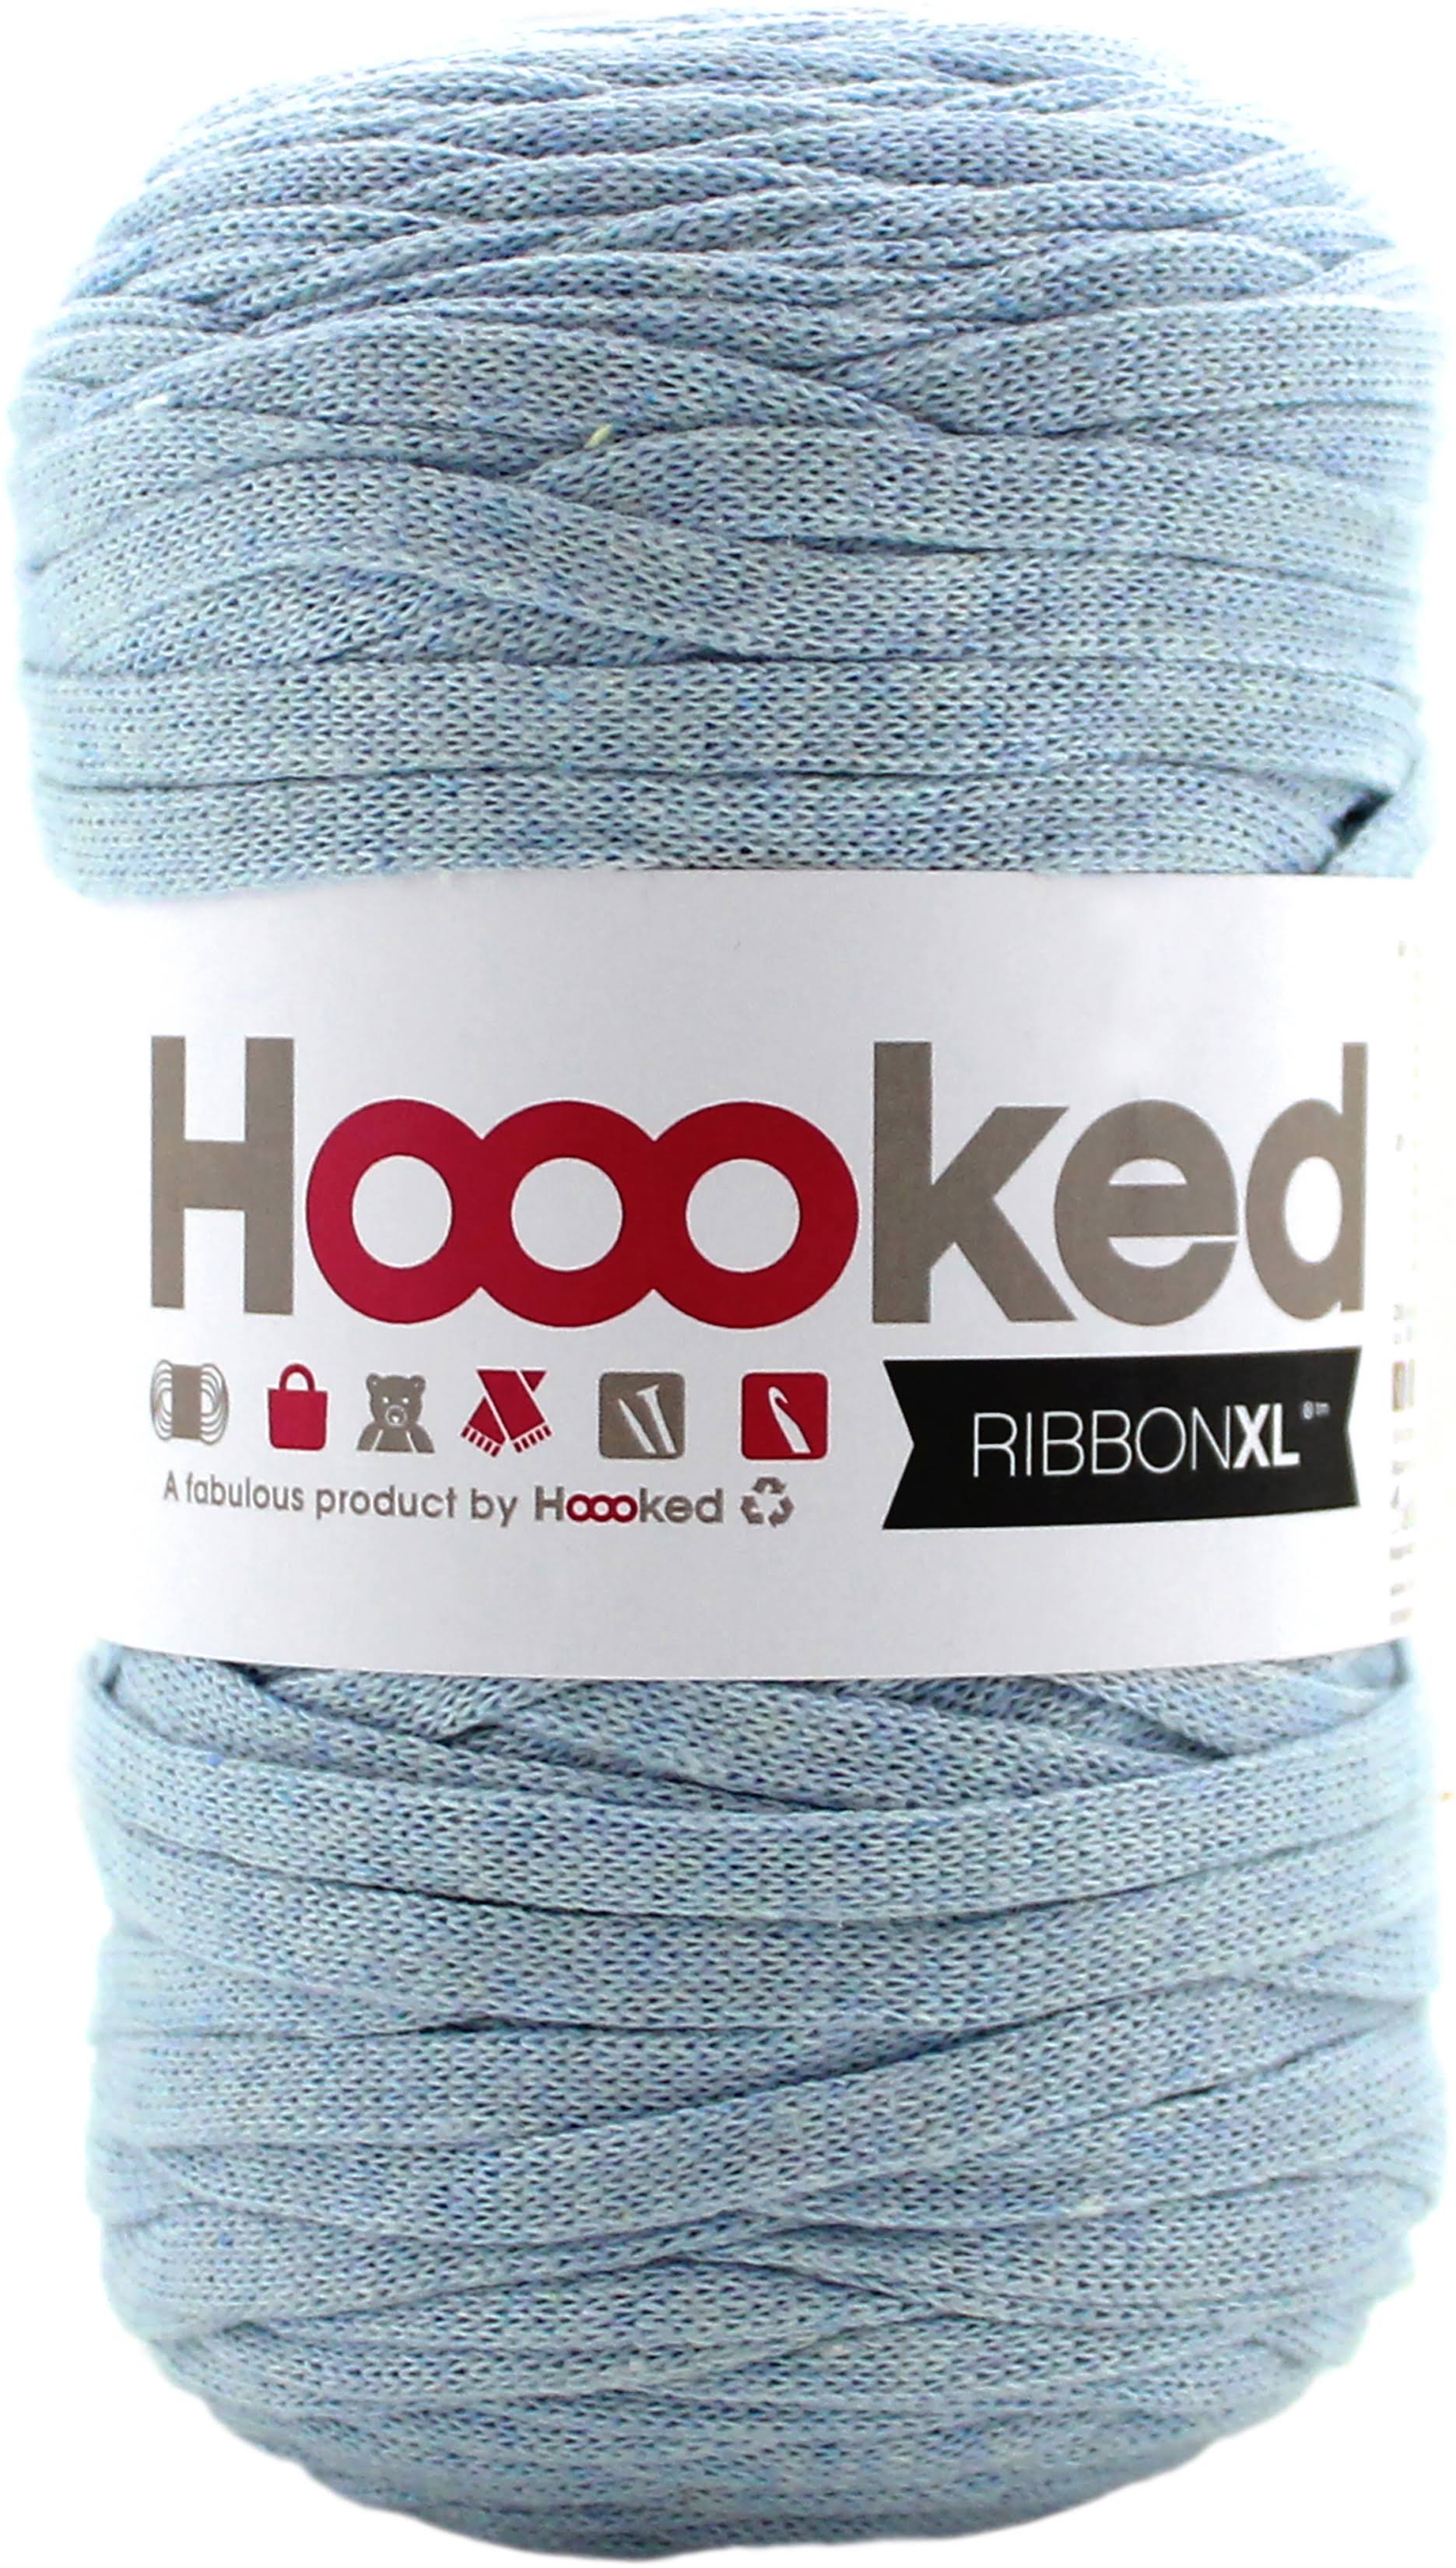 Hoooked Ribbon XL Yarn - Powder Blue